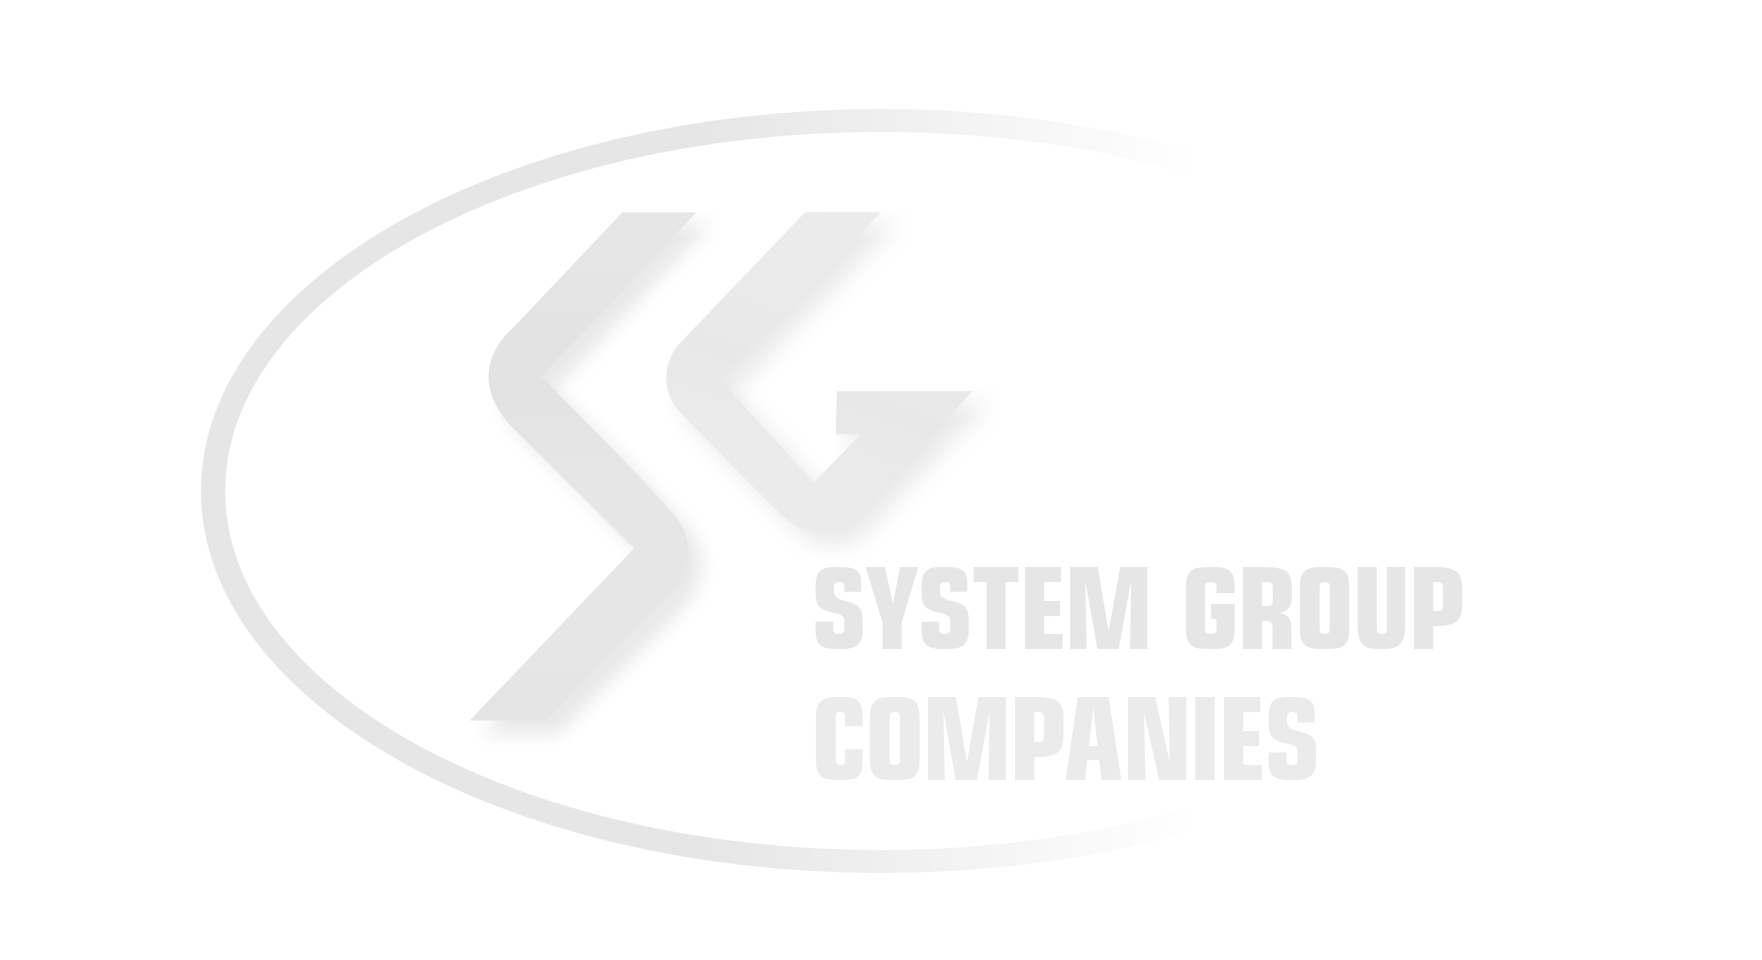 SG Companies